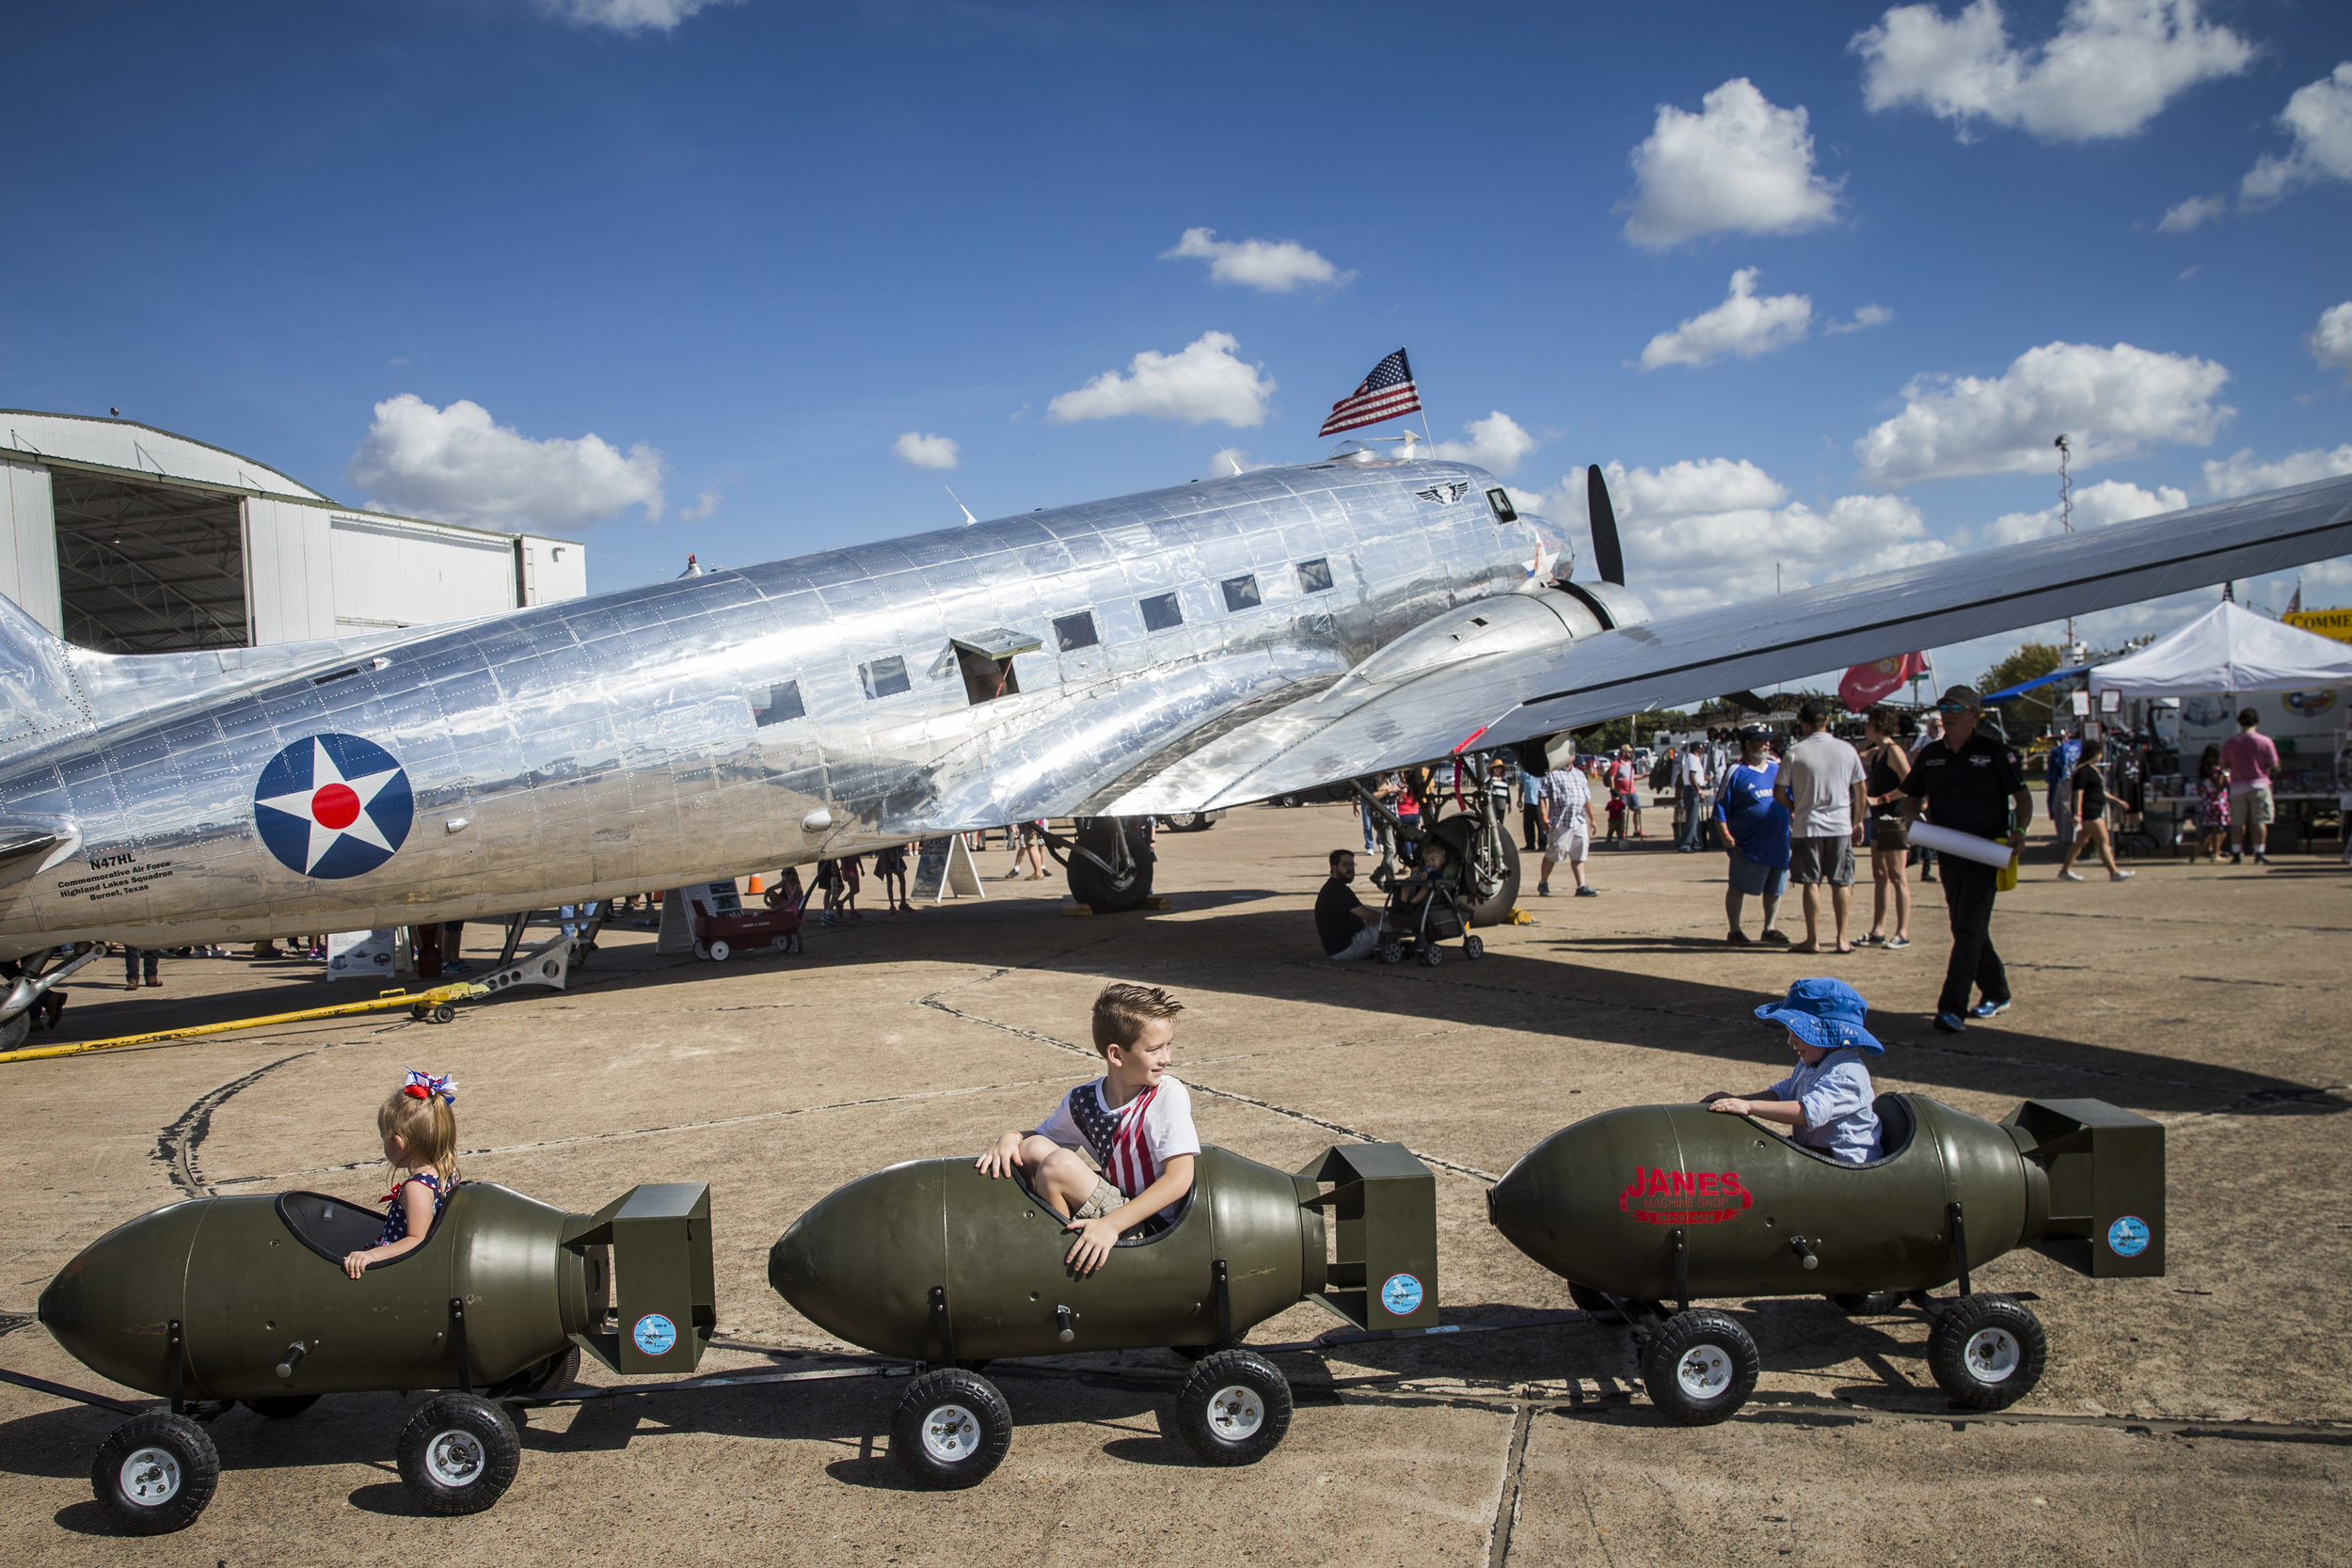  Children ride a bomb-shaped auto-train at an air show in Dallas, Texas 